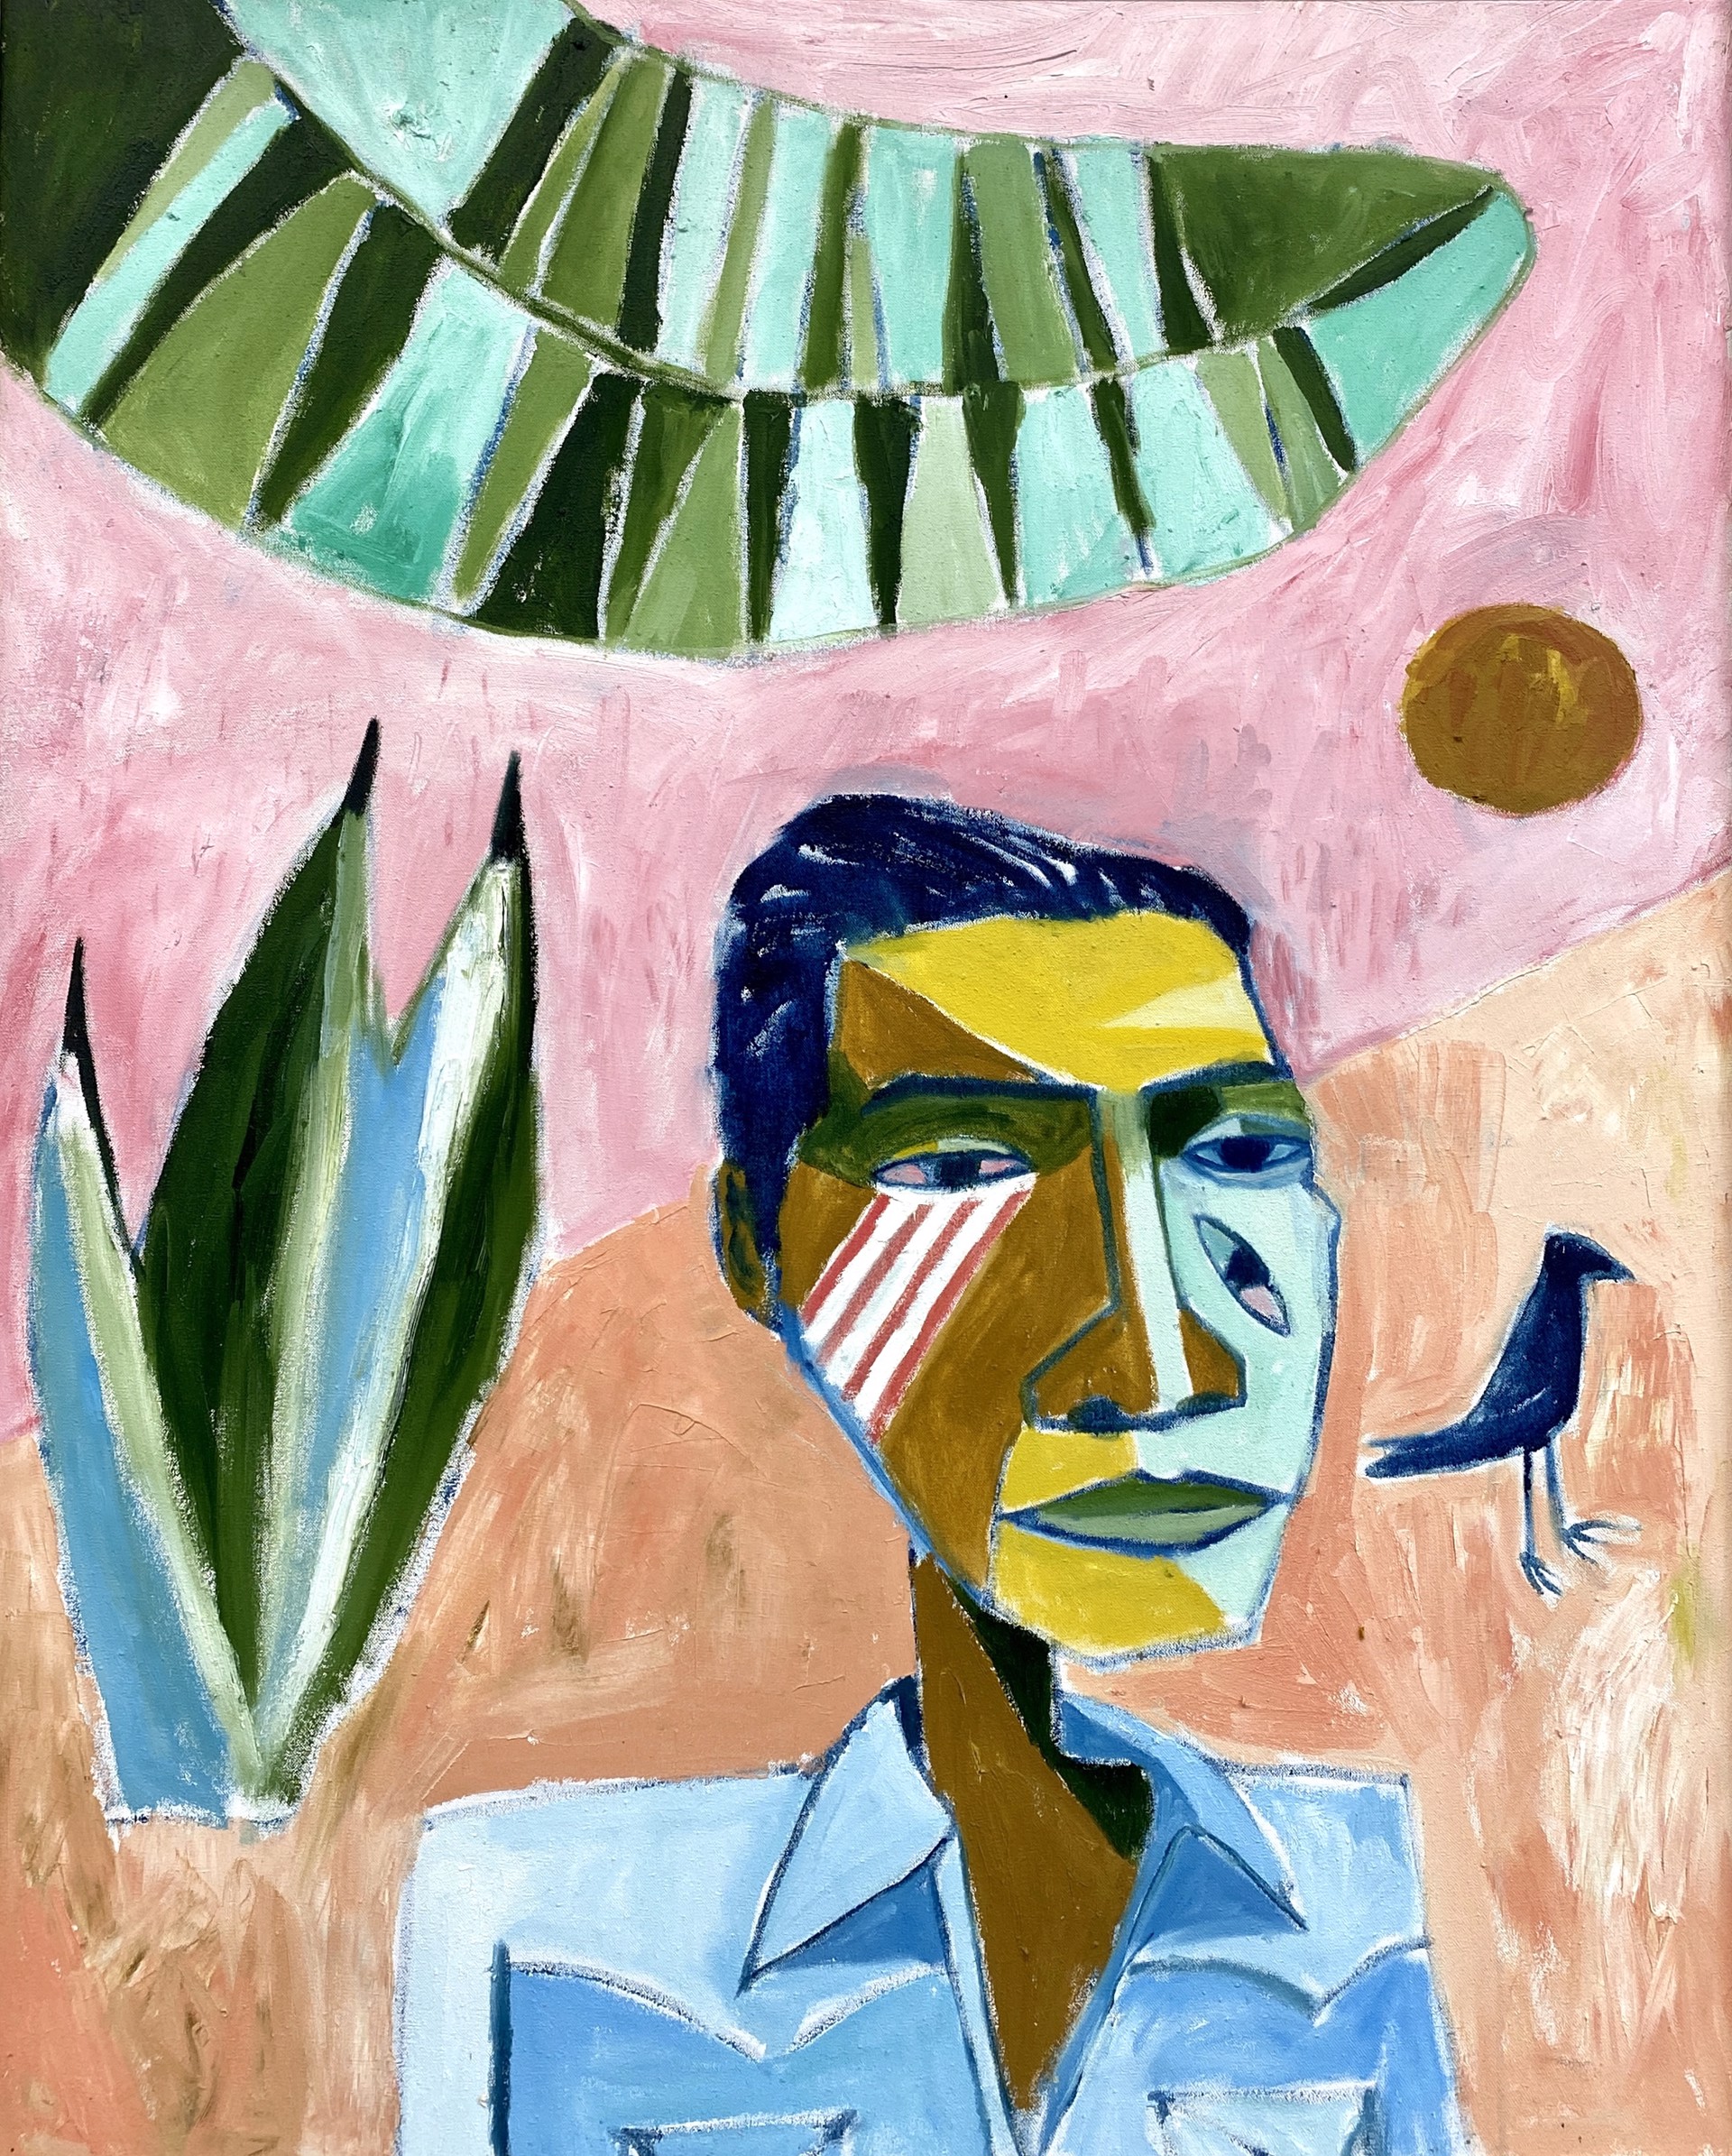 Self Portrait with Black Bird by Cruz Ortiz